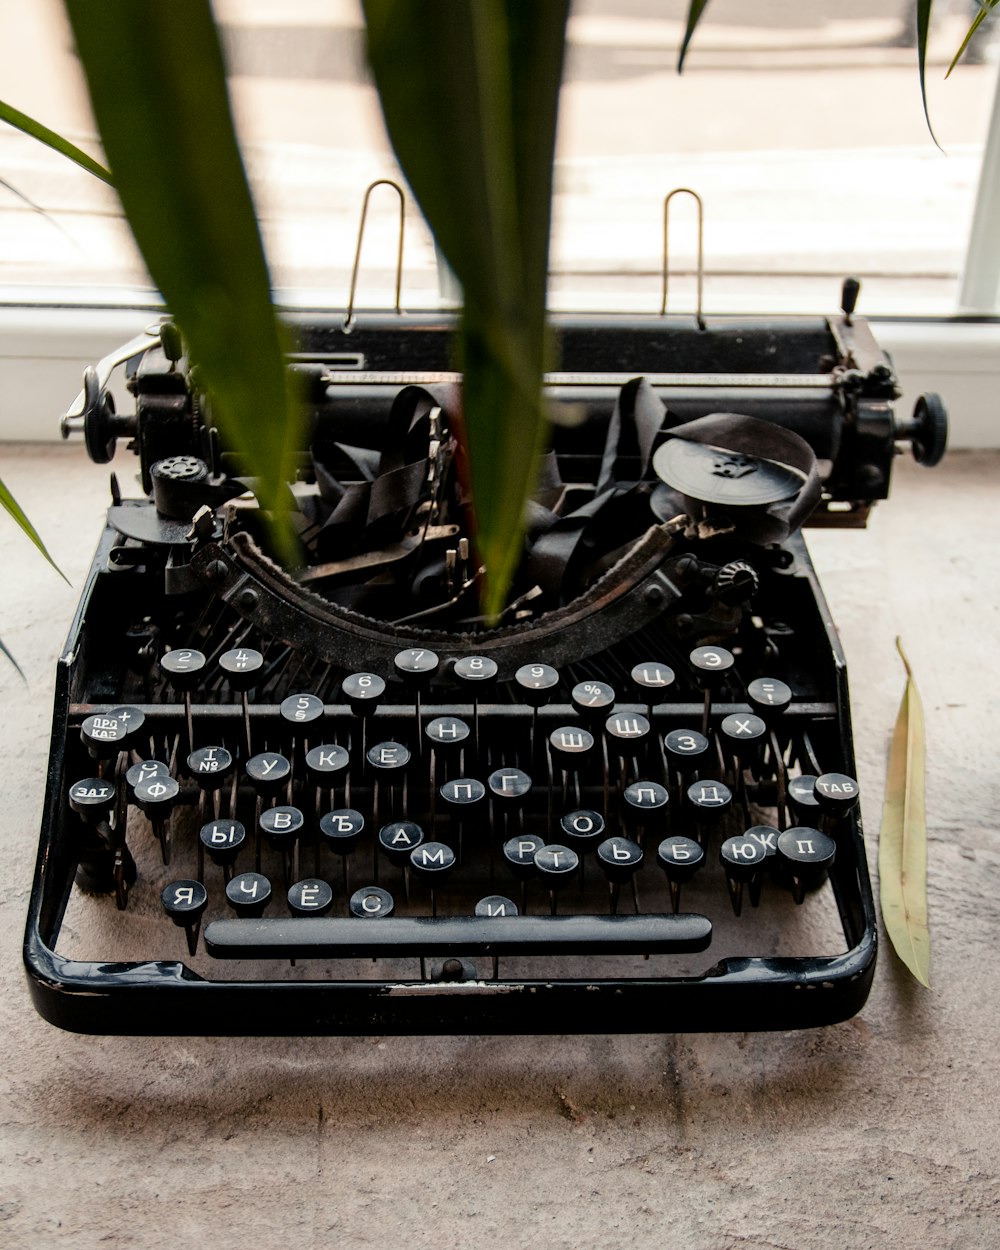 black typewriter on white table